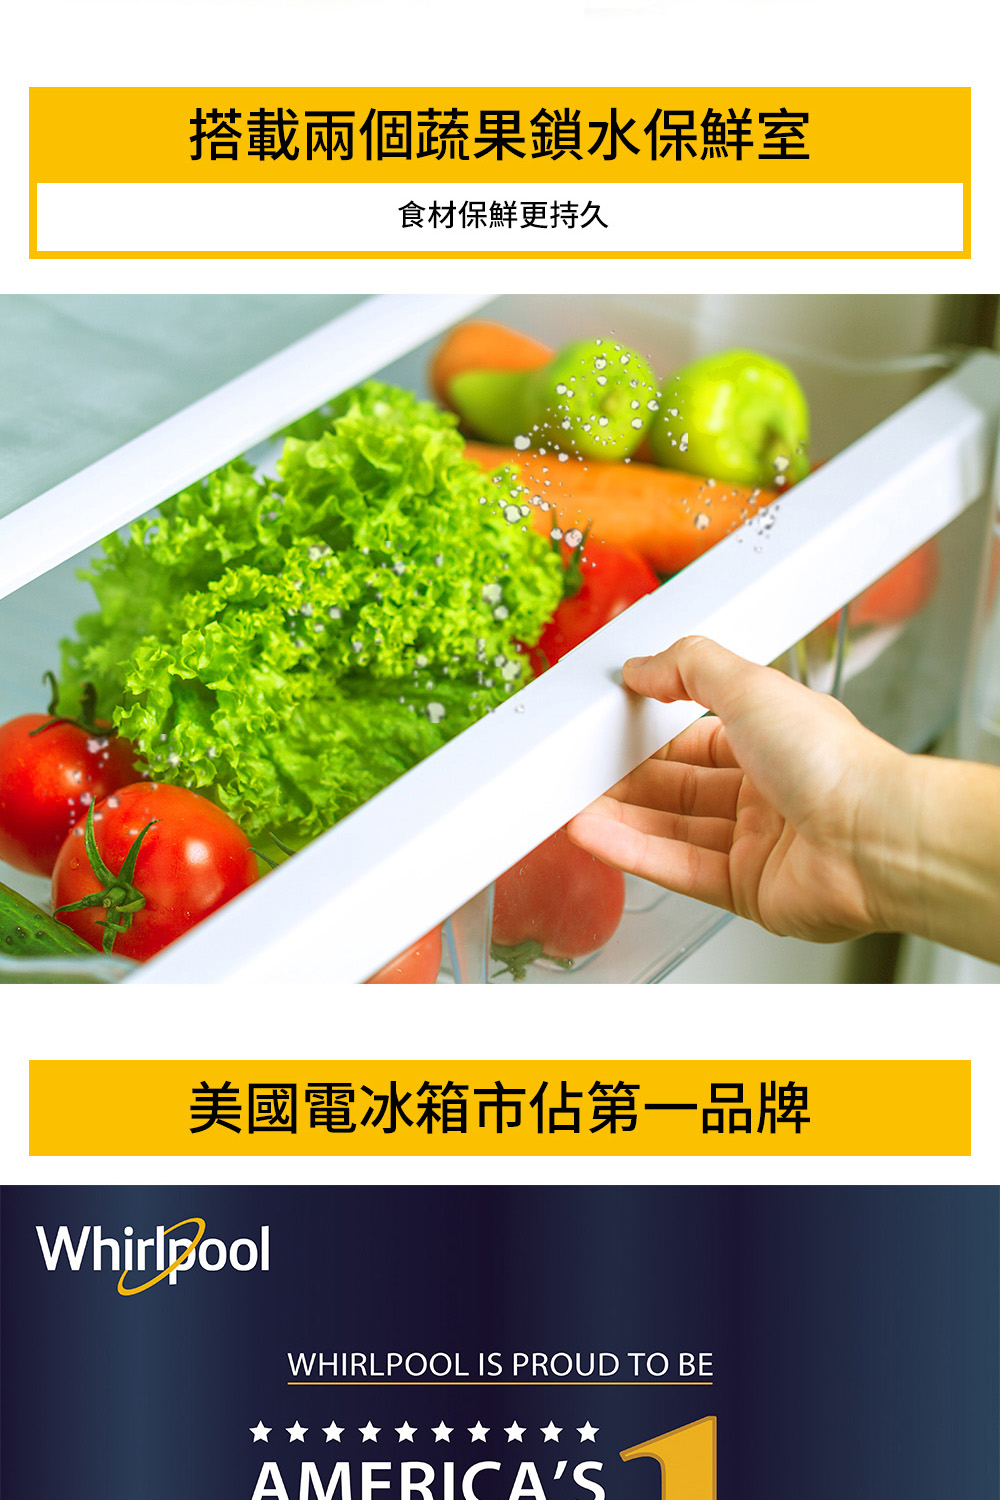 搭載兩個蔬果鎖水保鮮室 食材保鮮更持久 美國電冰箱市佔第一品牌 